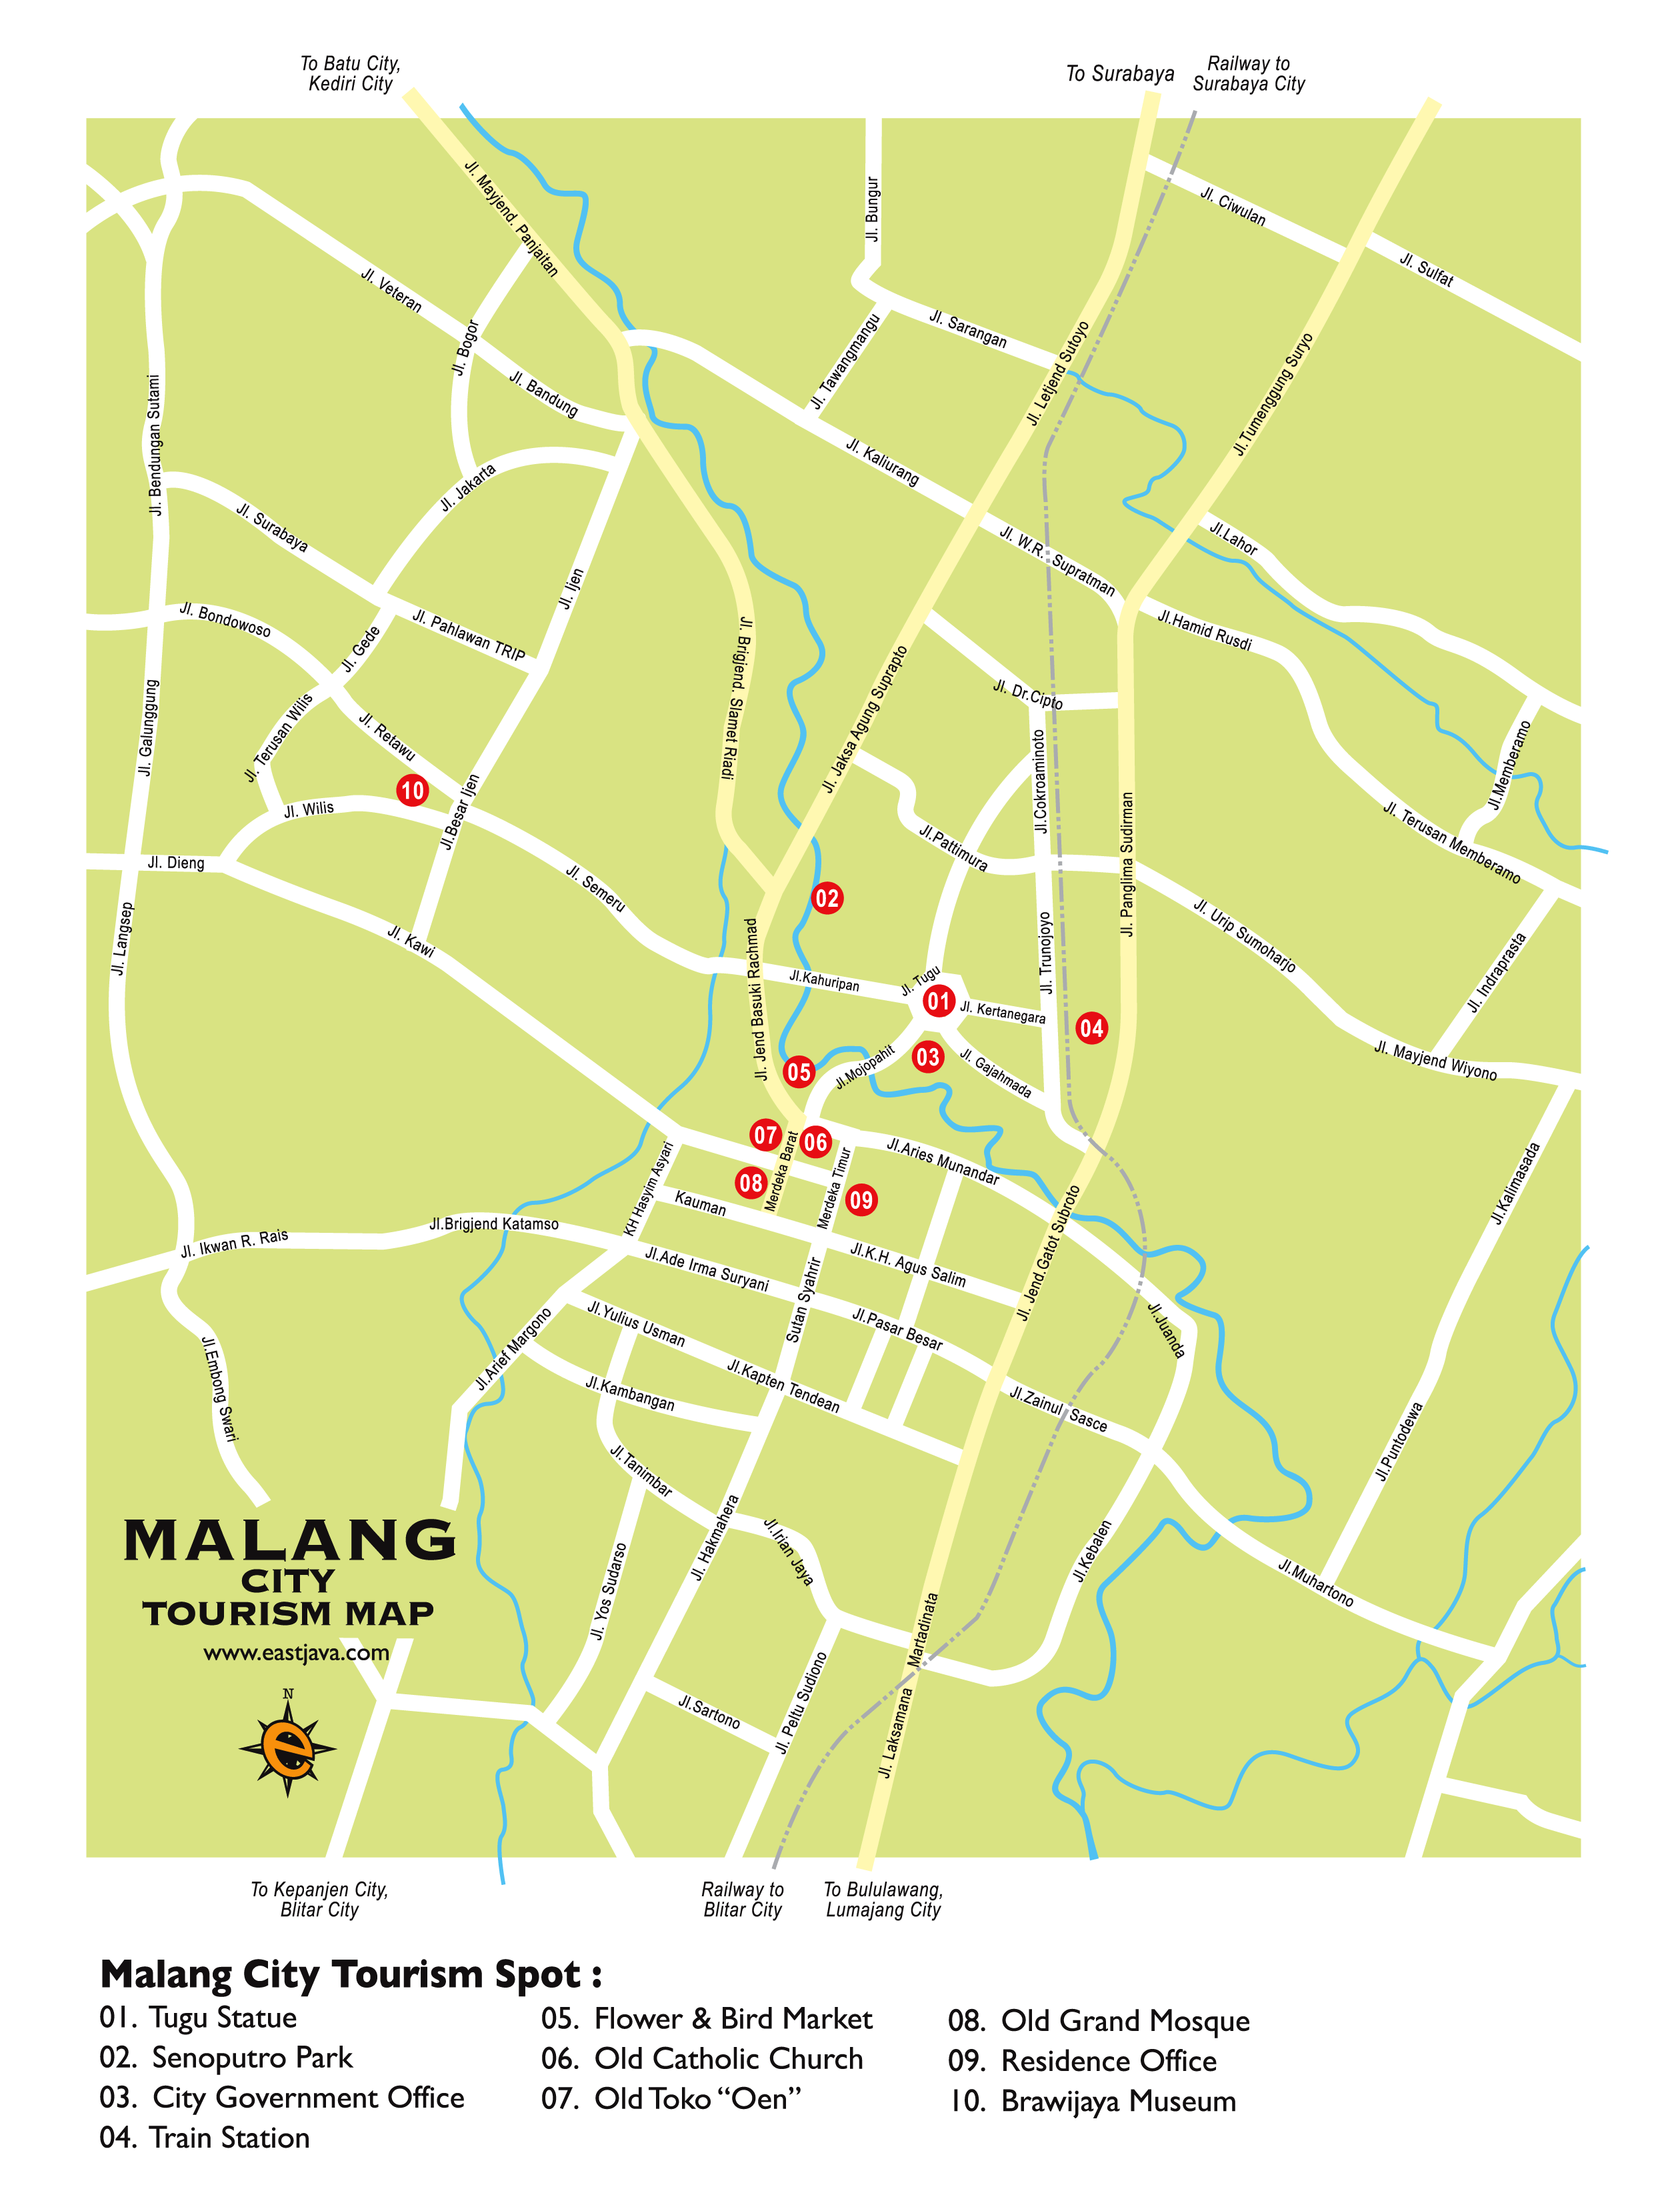 Malang Tourism Map - Peta Wisata Kota Malang